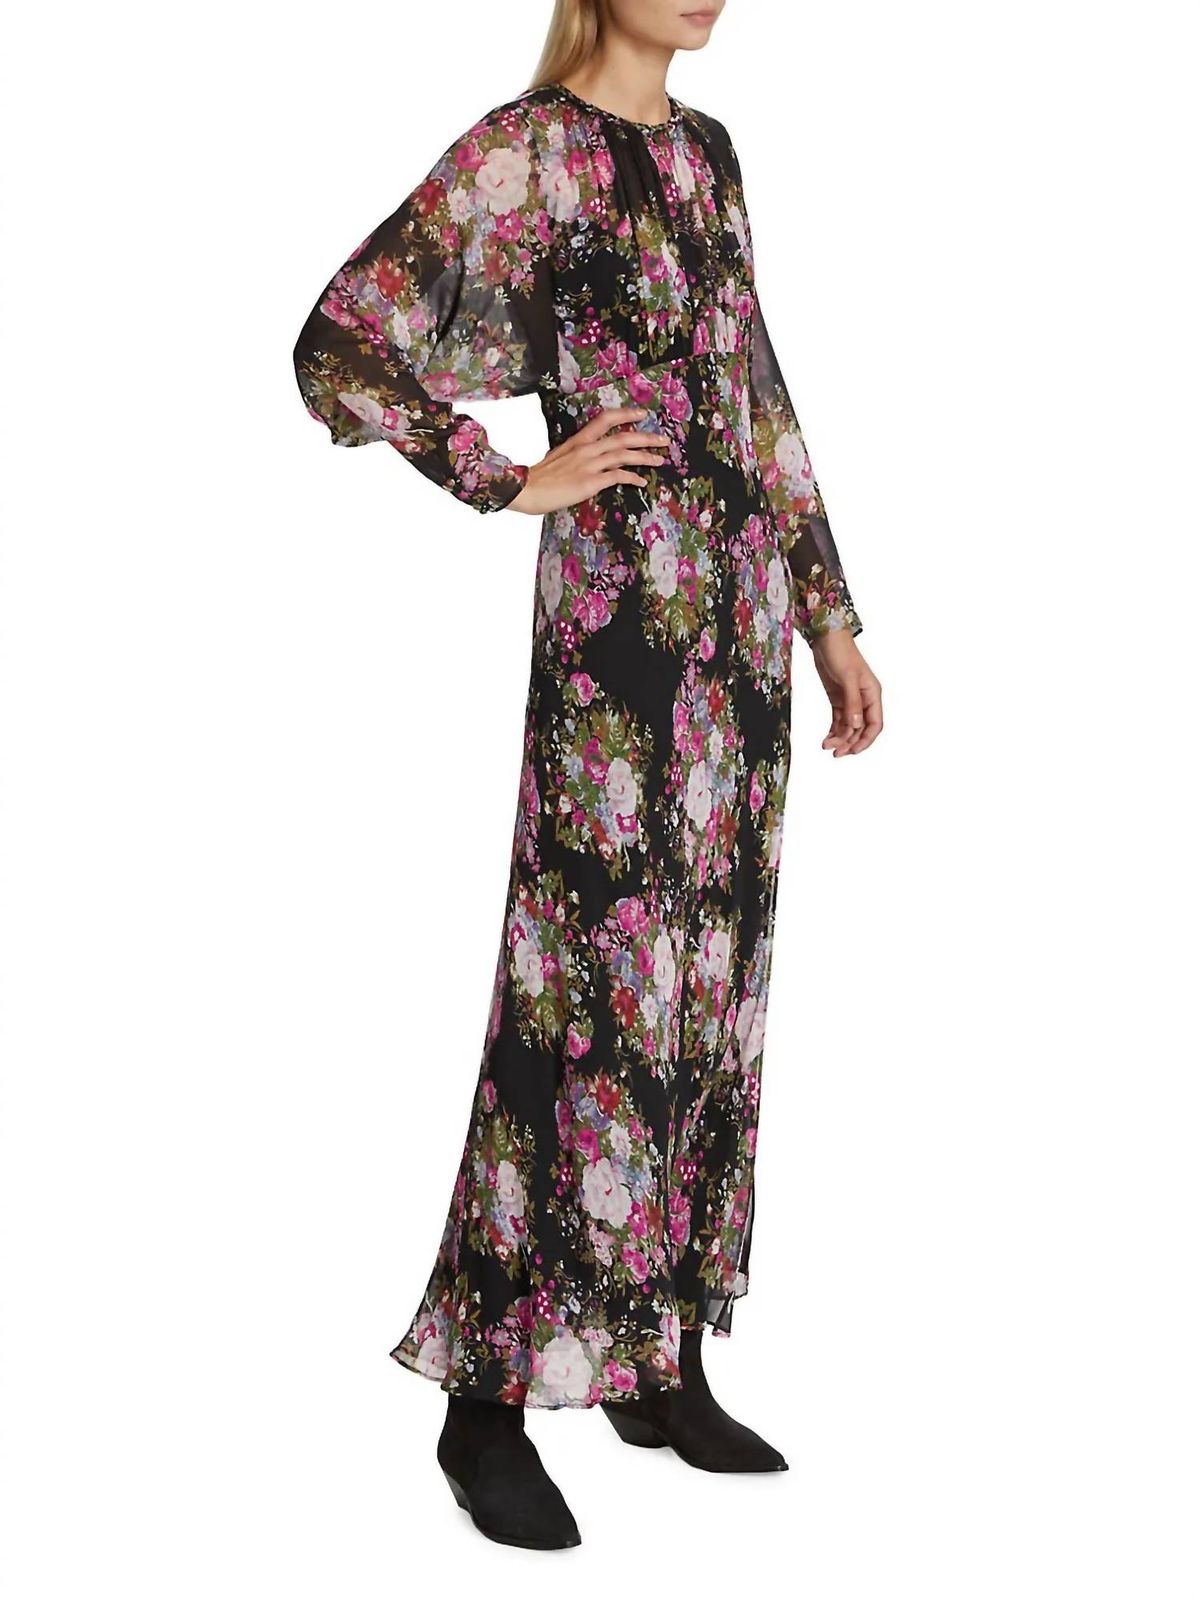 Style 1-713305795-1498 LoveShackFancy Size 4 Long Sleeve Black Side Slit Dress on Queenly